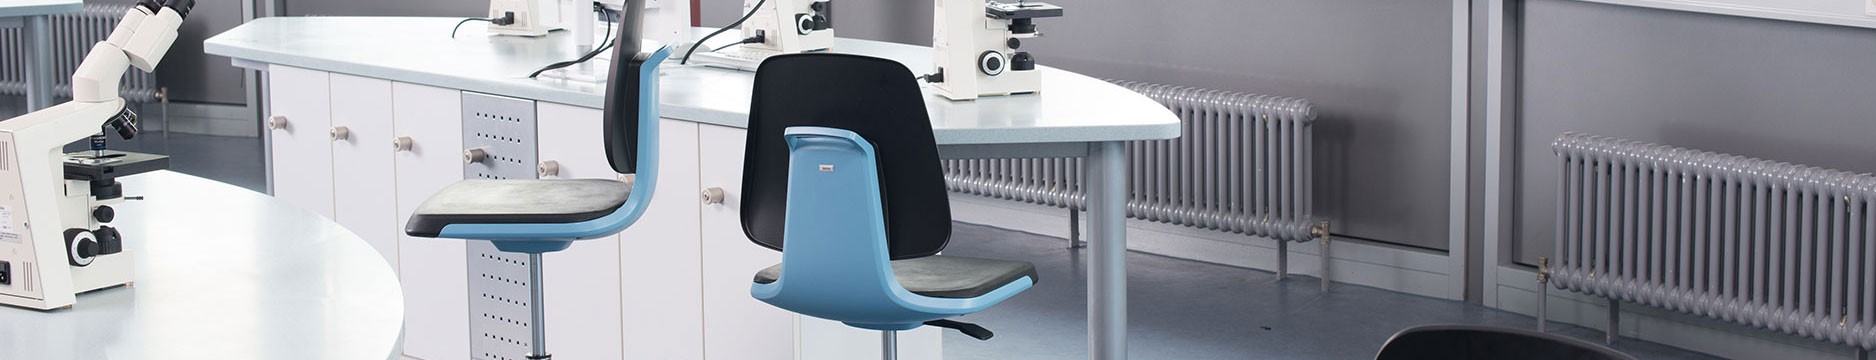 Laboratorium stoelen